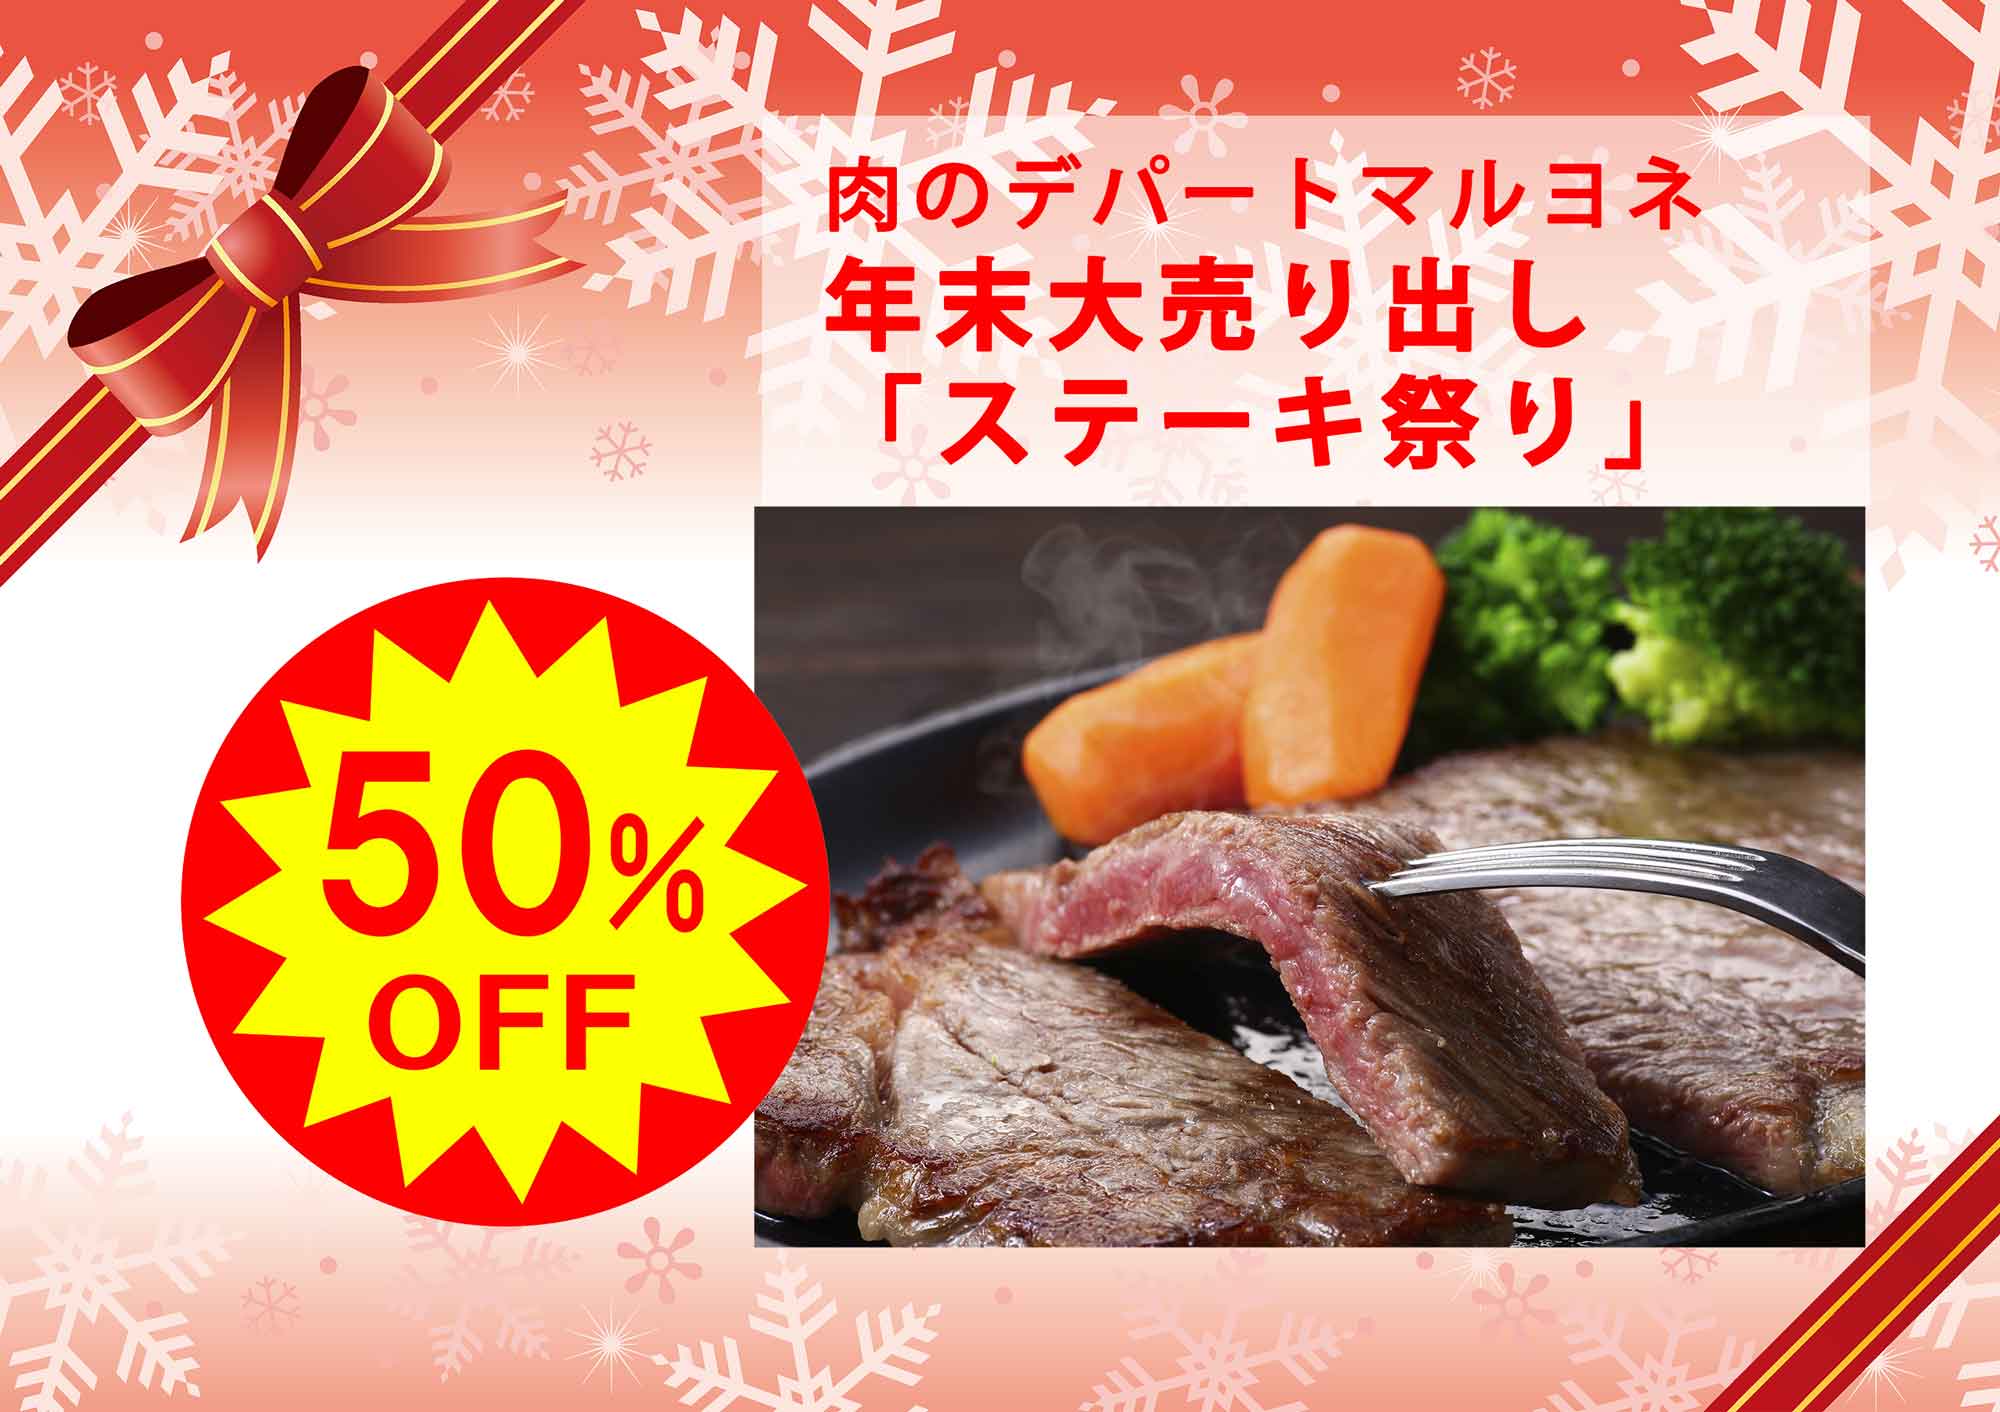 肉のデパートマルヨネ 年末大売り出し「ステーキ祭り」神戸ビーフサーロインステーキ100gあたり通常3000円→1500円